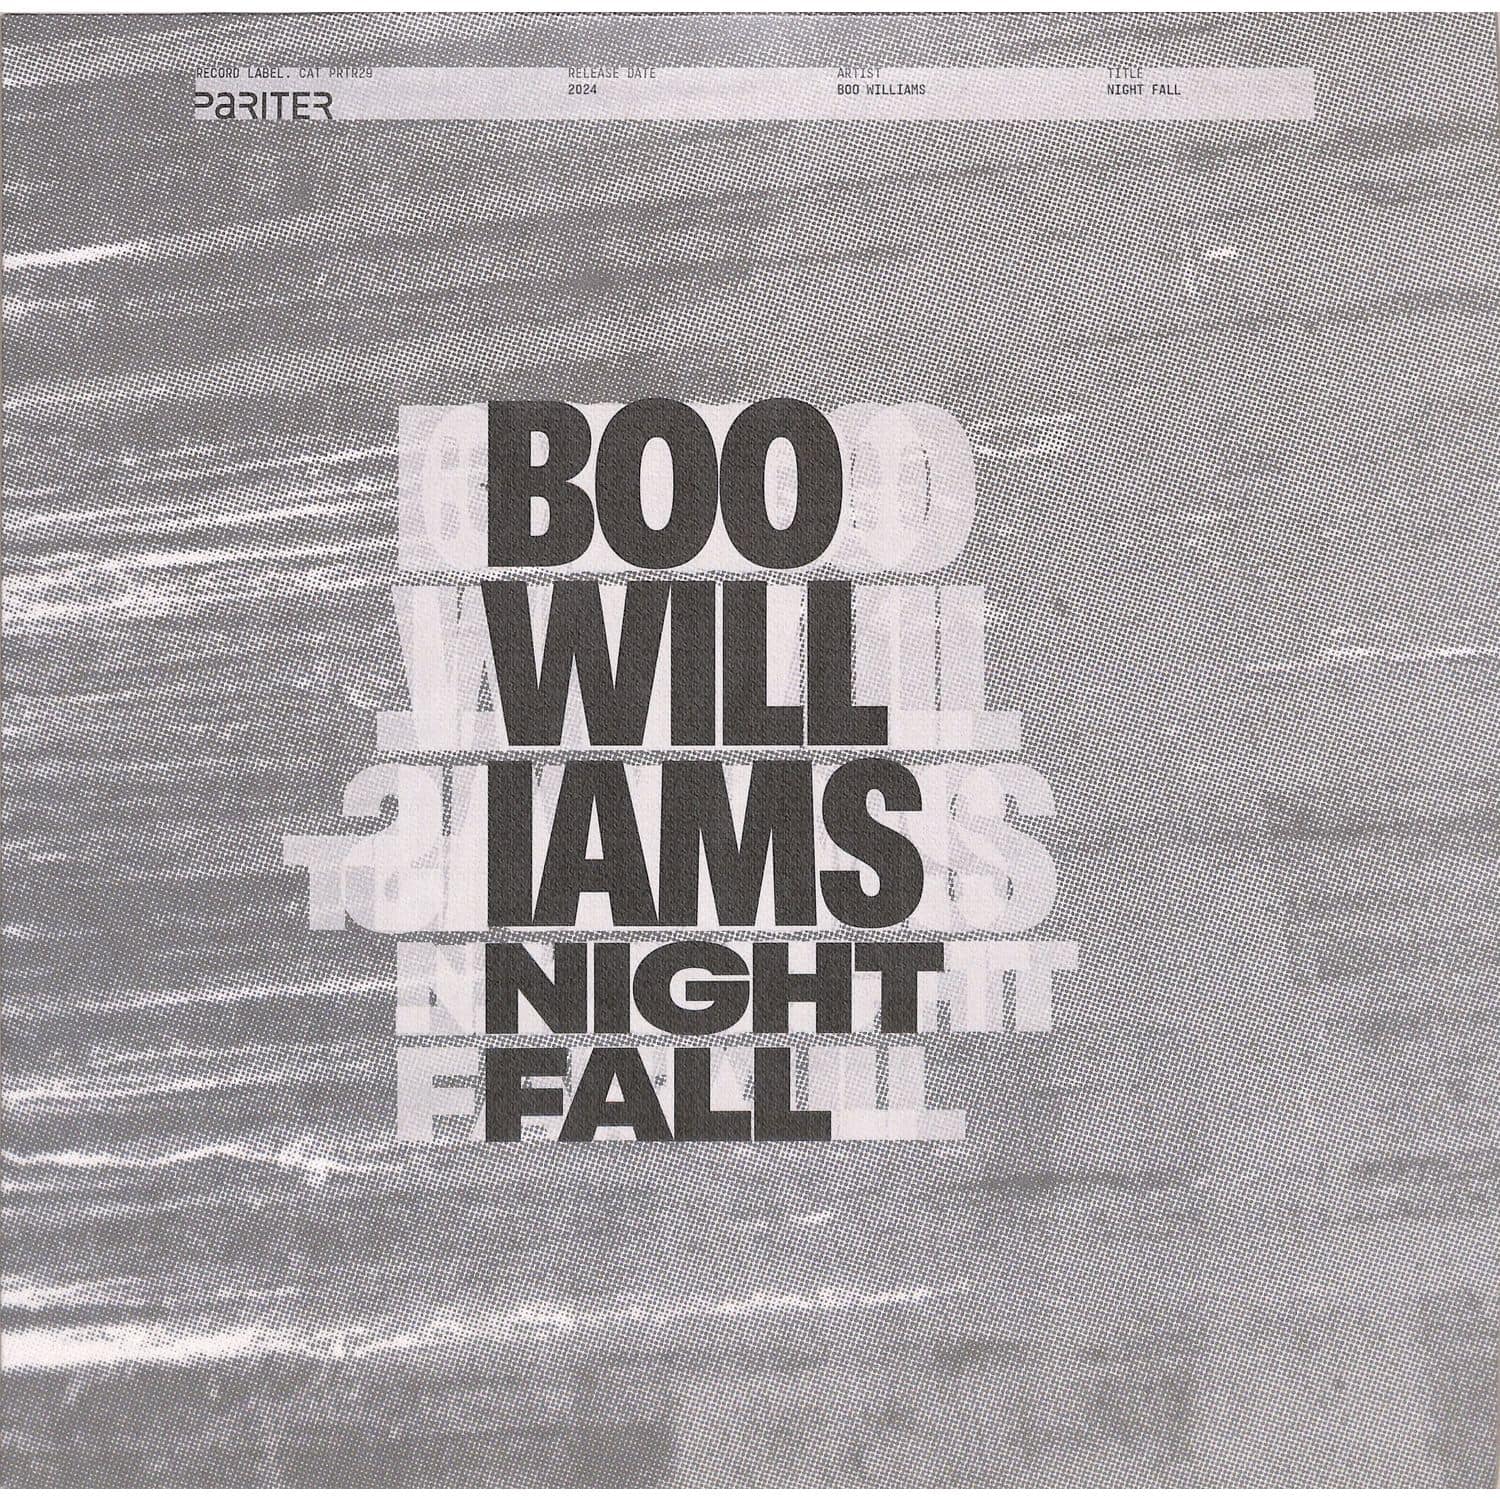 Boo Williams - NIGHT FALL